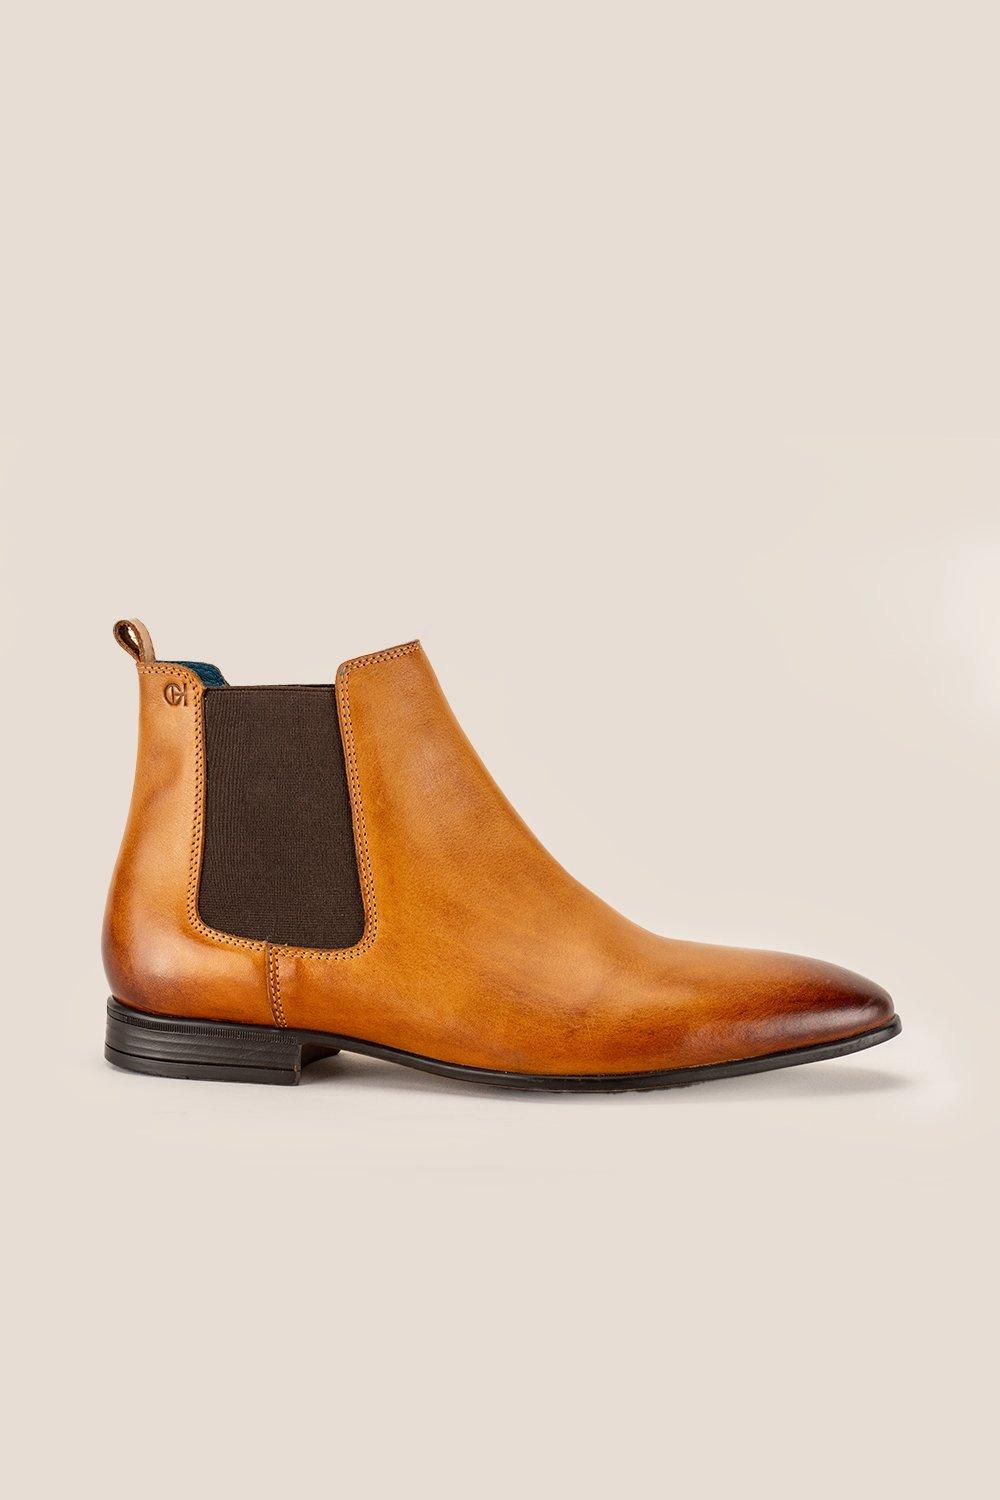 Кожаные ботинки челси Darwin Oswin Hyde, коричневый черные ботинки челси pablo marni цвет black